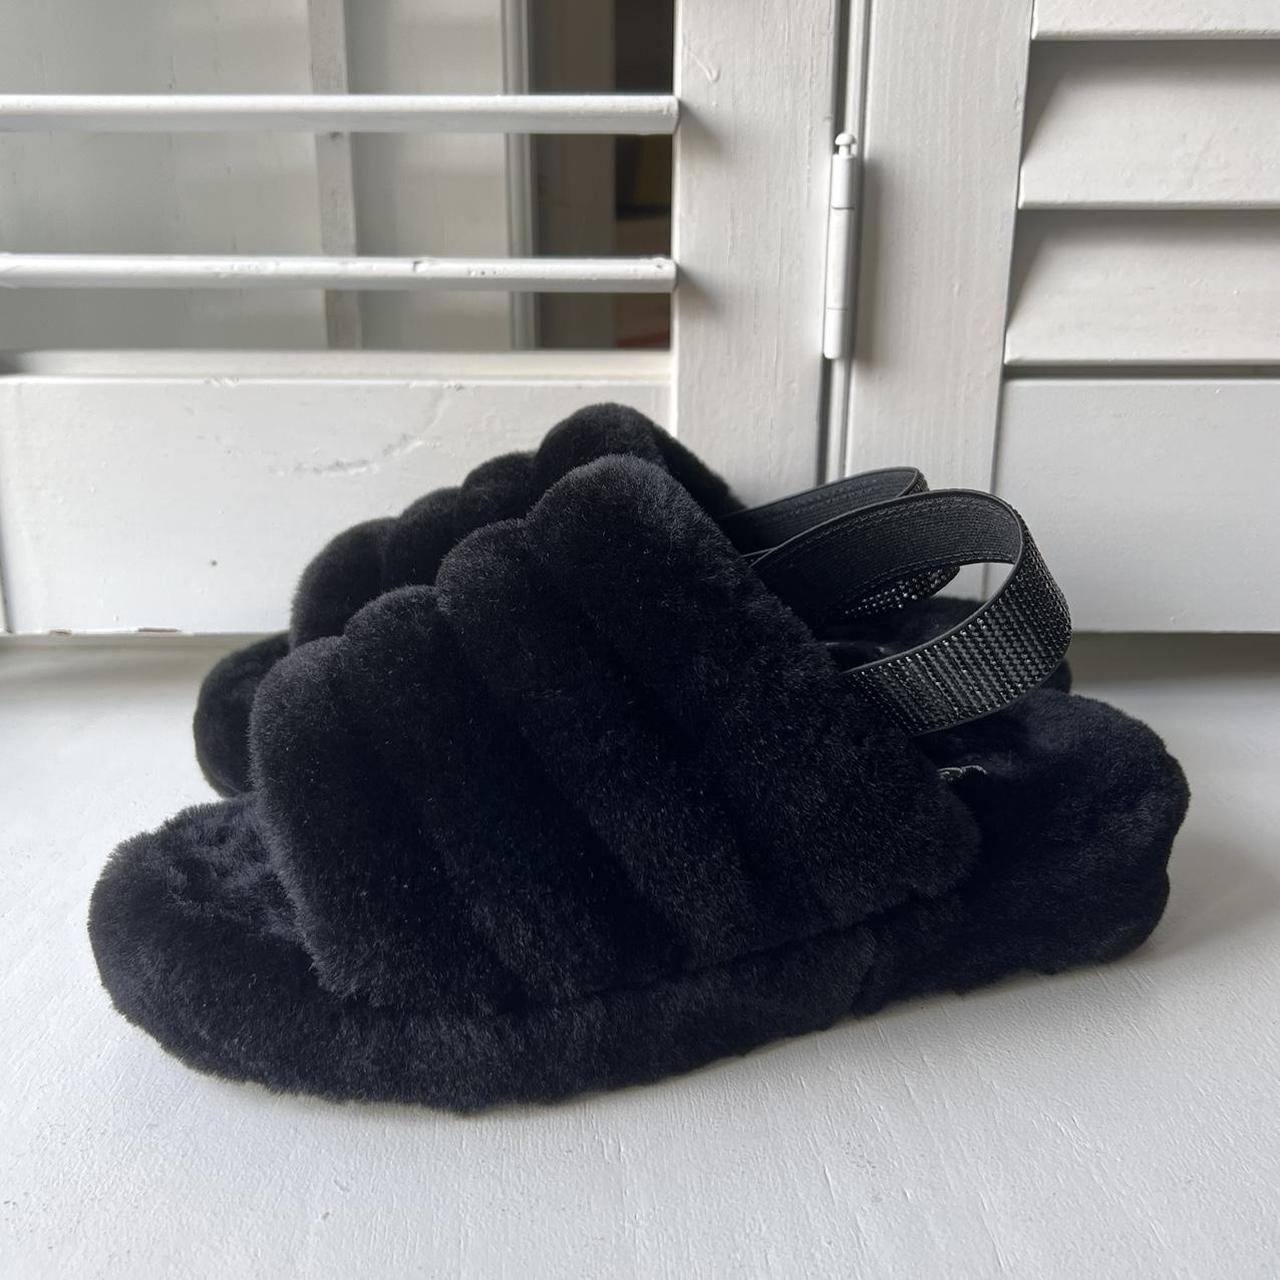 LV indoor fur slippers - Depop